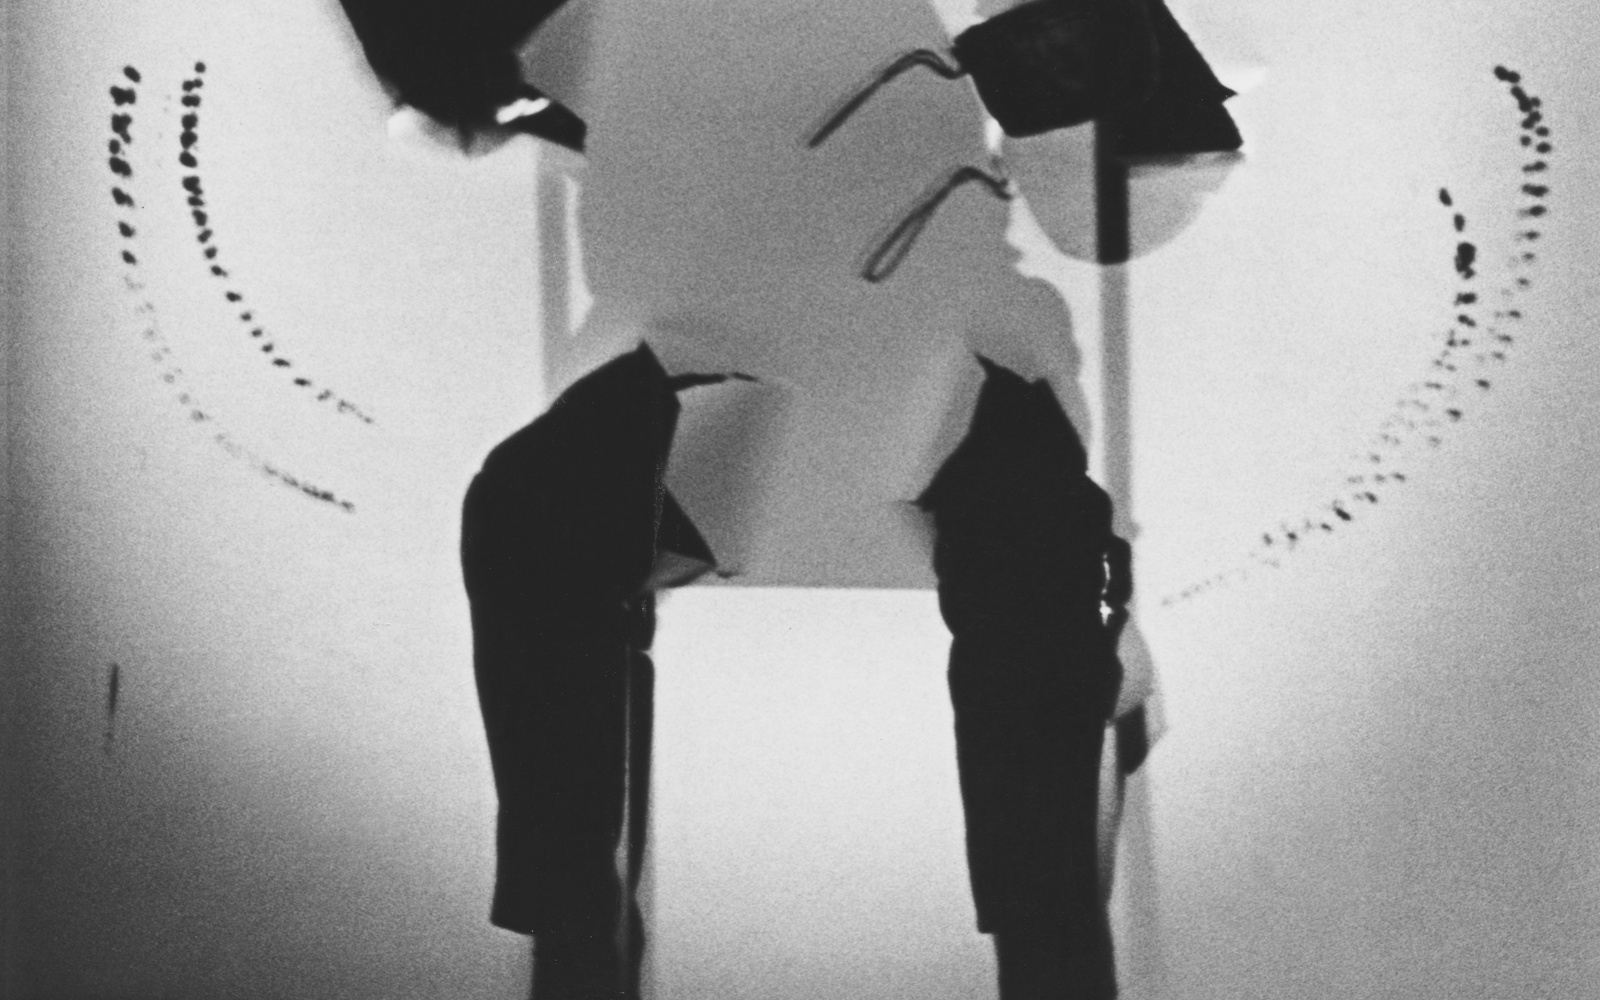 Schwarz-weiß Bild einer Silhouette, die auf einem Stuhl sitzt